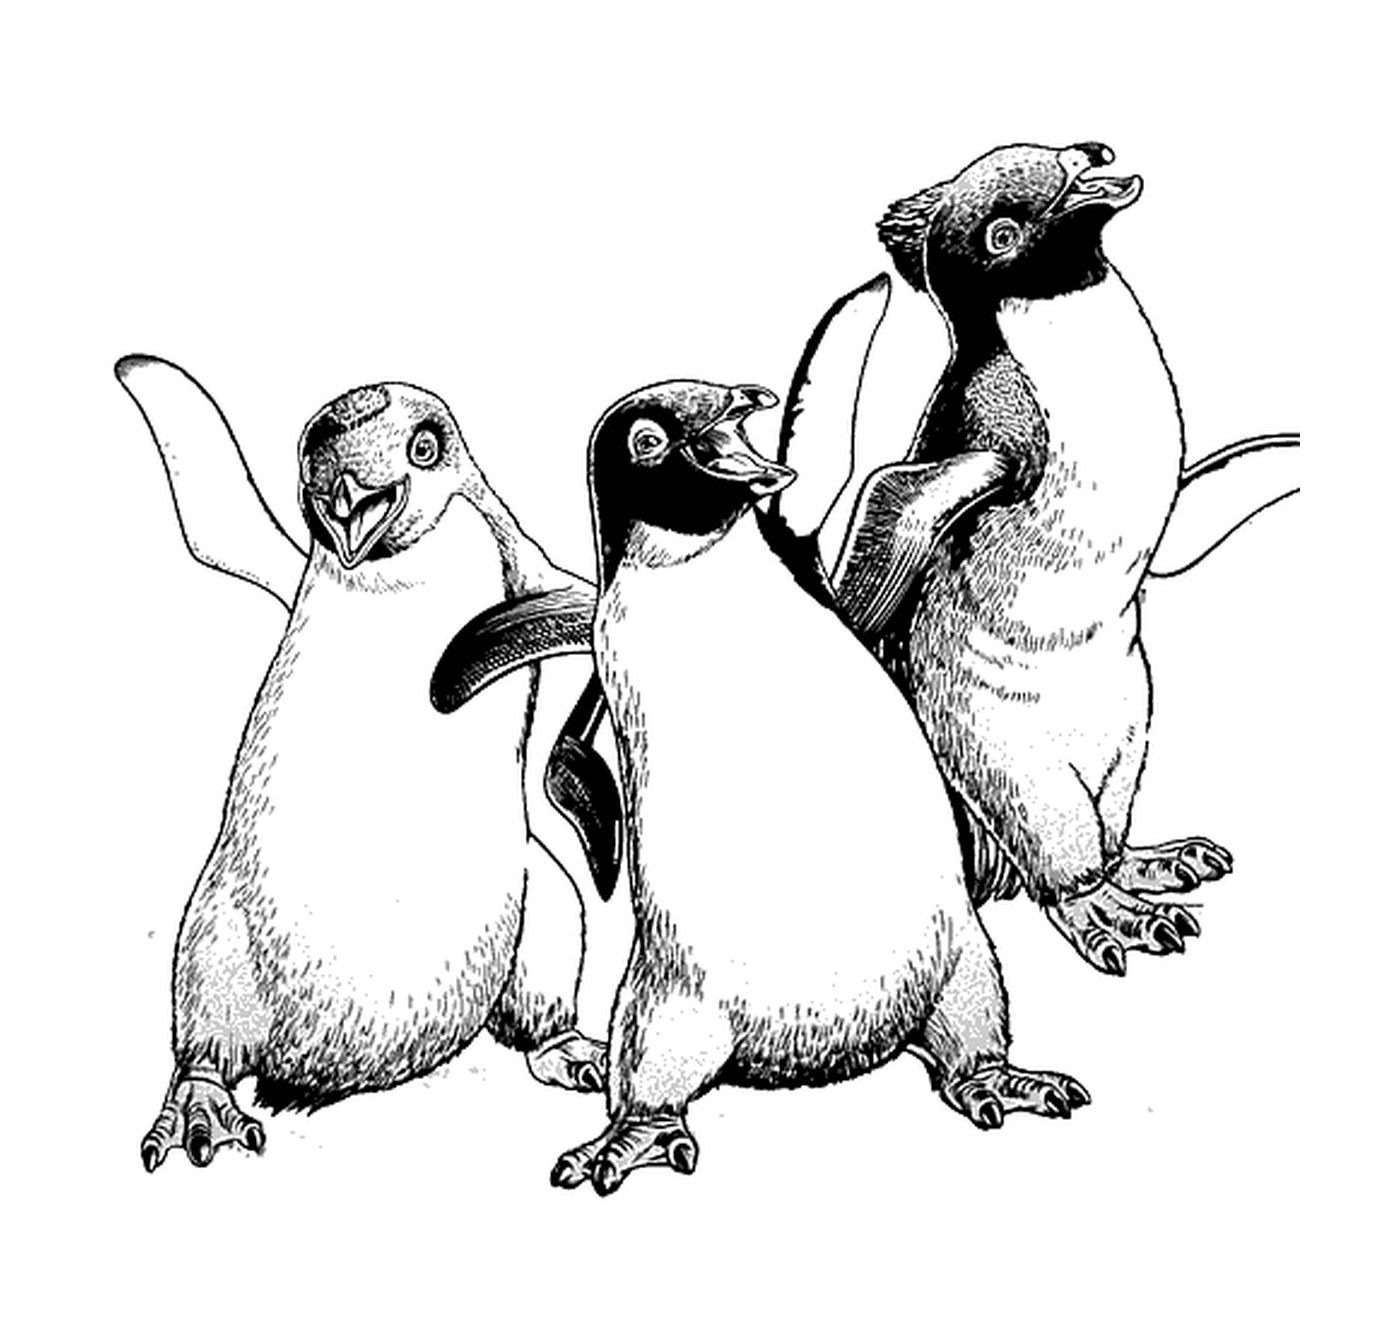  Grupo de tres pingüinos uno al lado del otro 